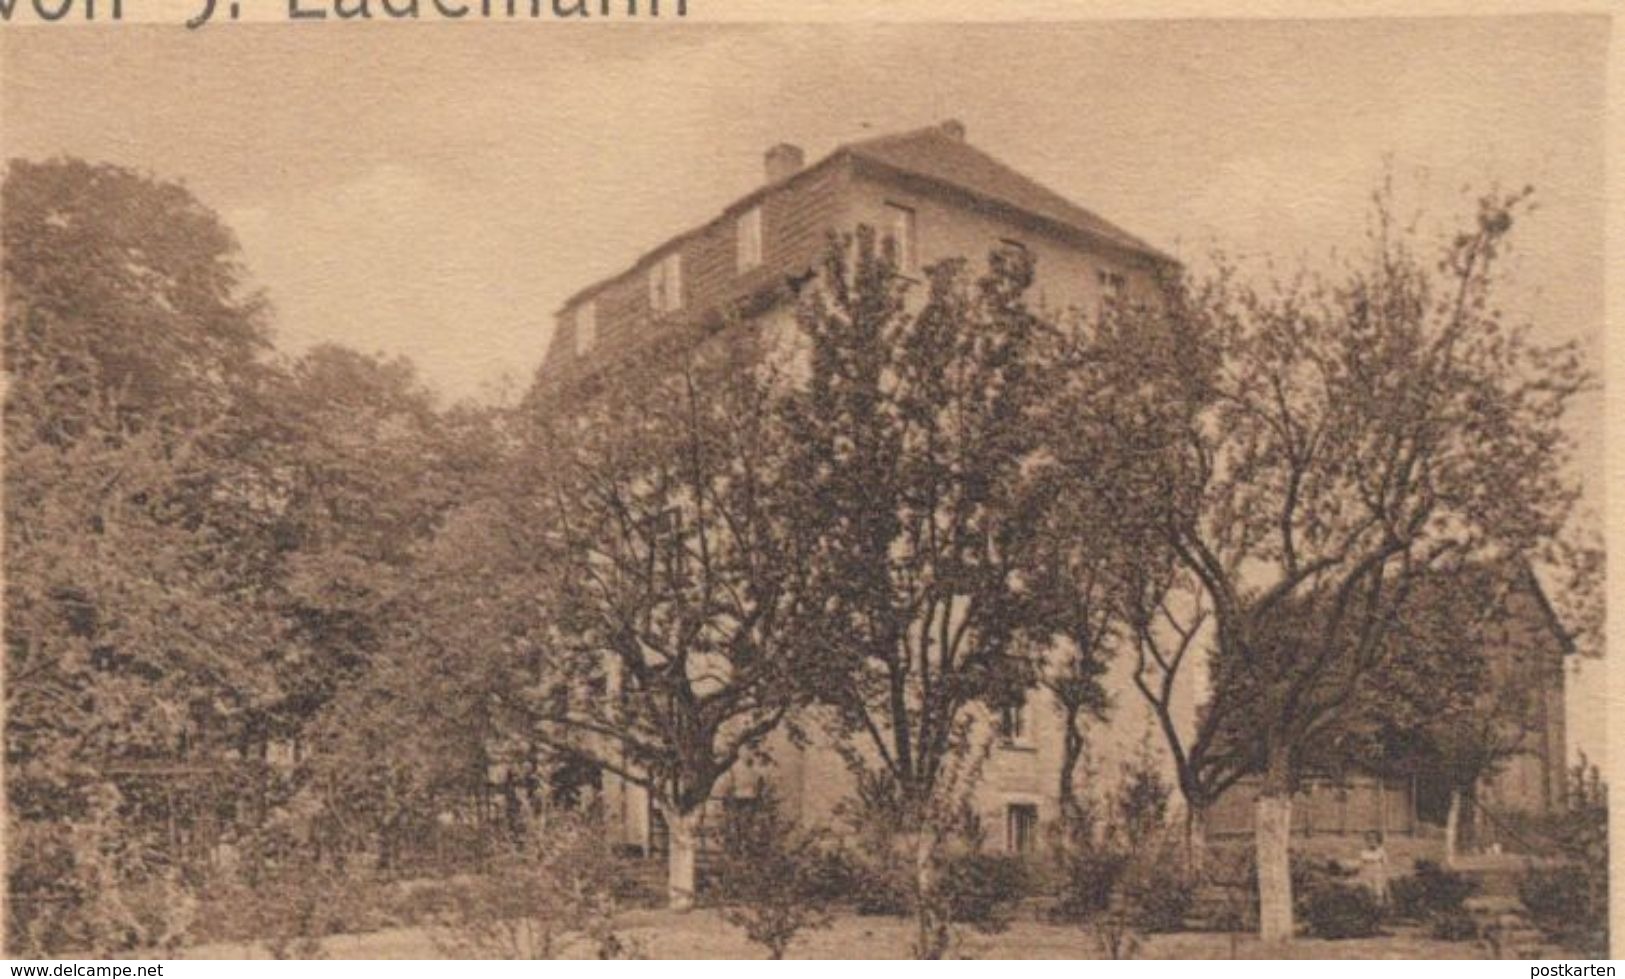 ALTE POSTKARTE HELMSTEDT TÖCHTER-INSTITUT VON J. LADEMANN Ansichtskarte Postcard Cpa AK - Helmstedt